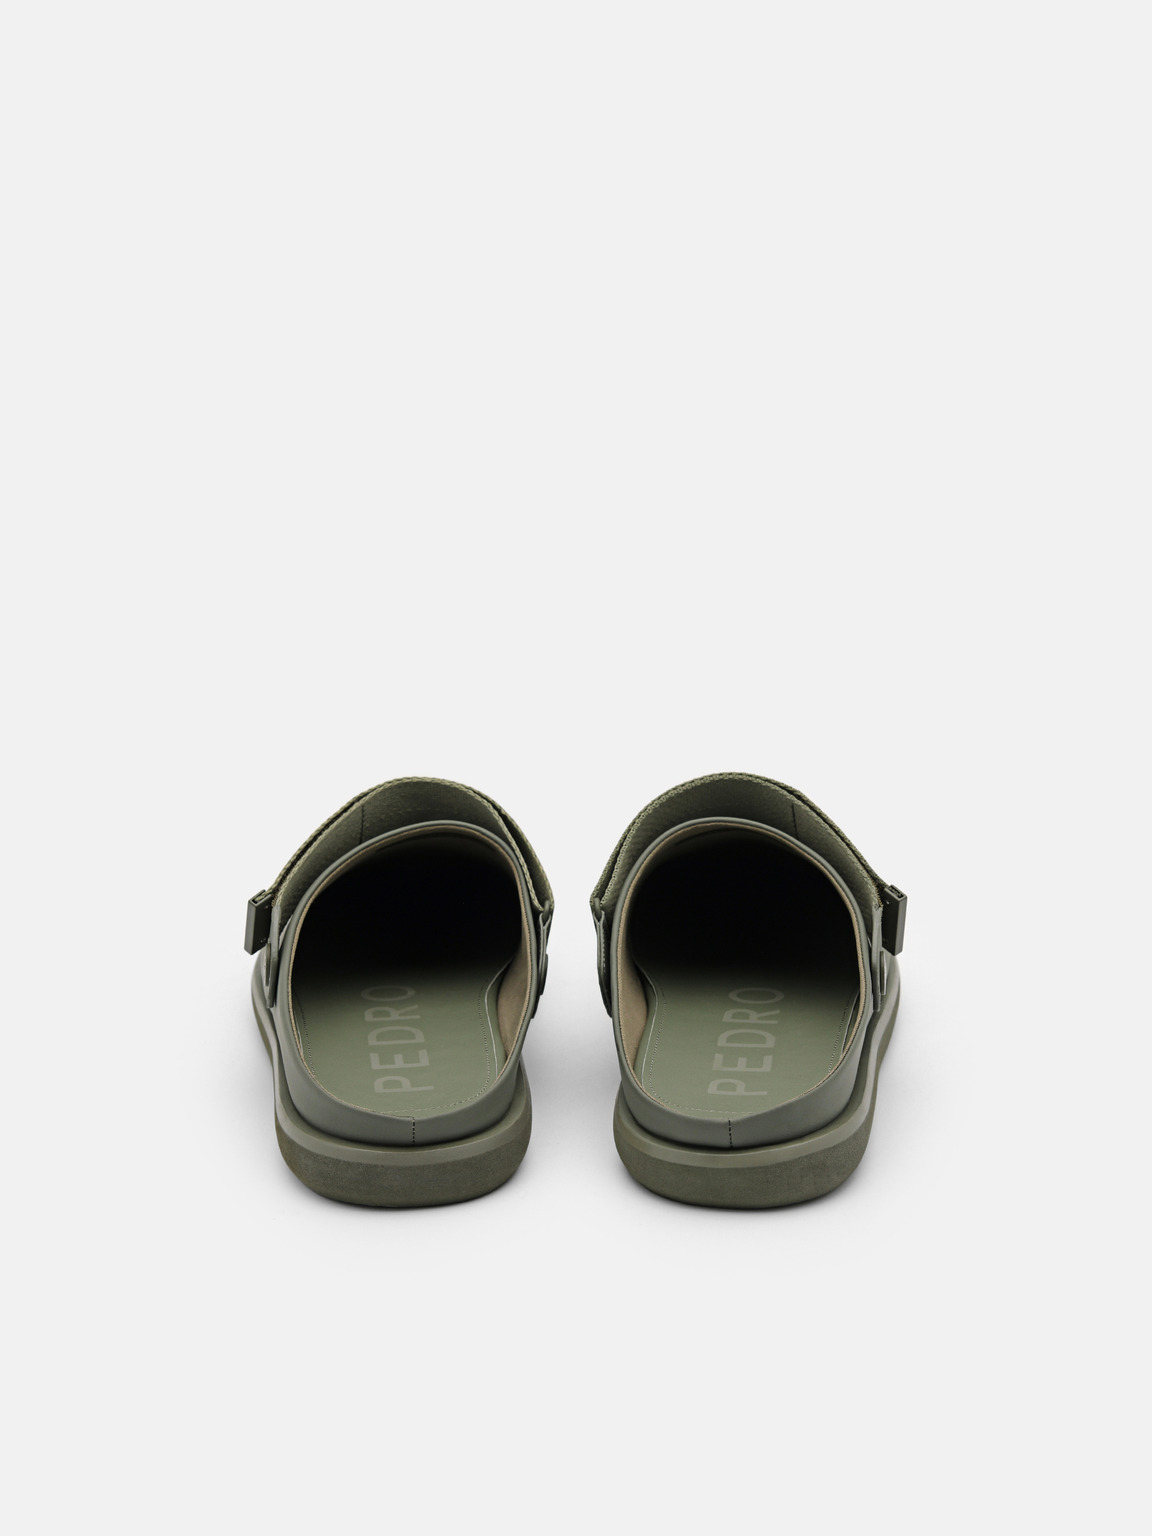 Kenzie Backstrap Sandals, Olive